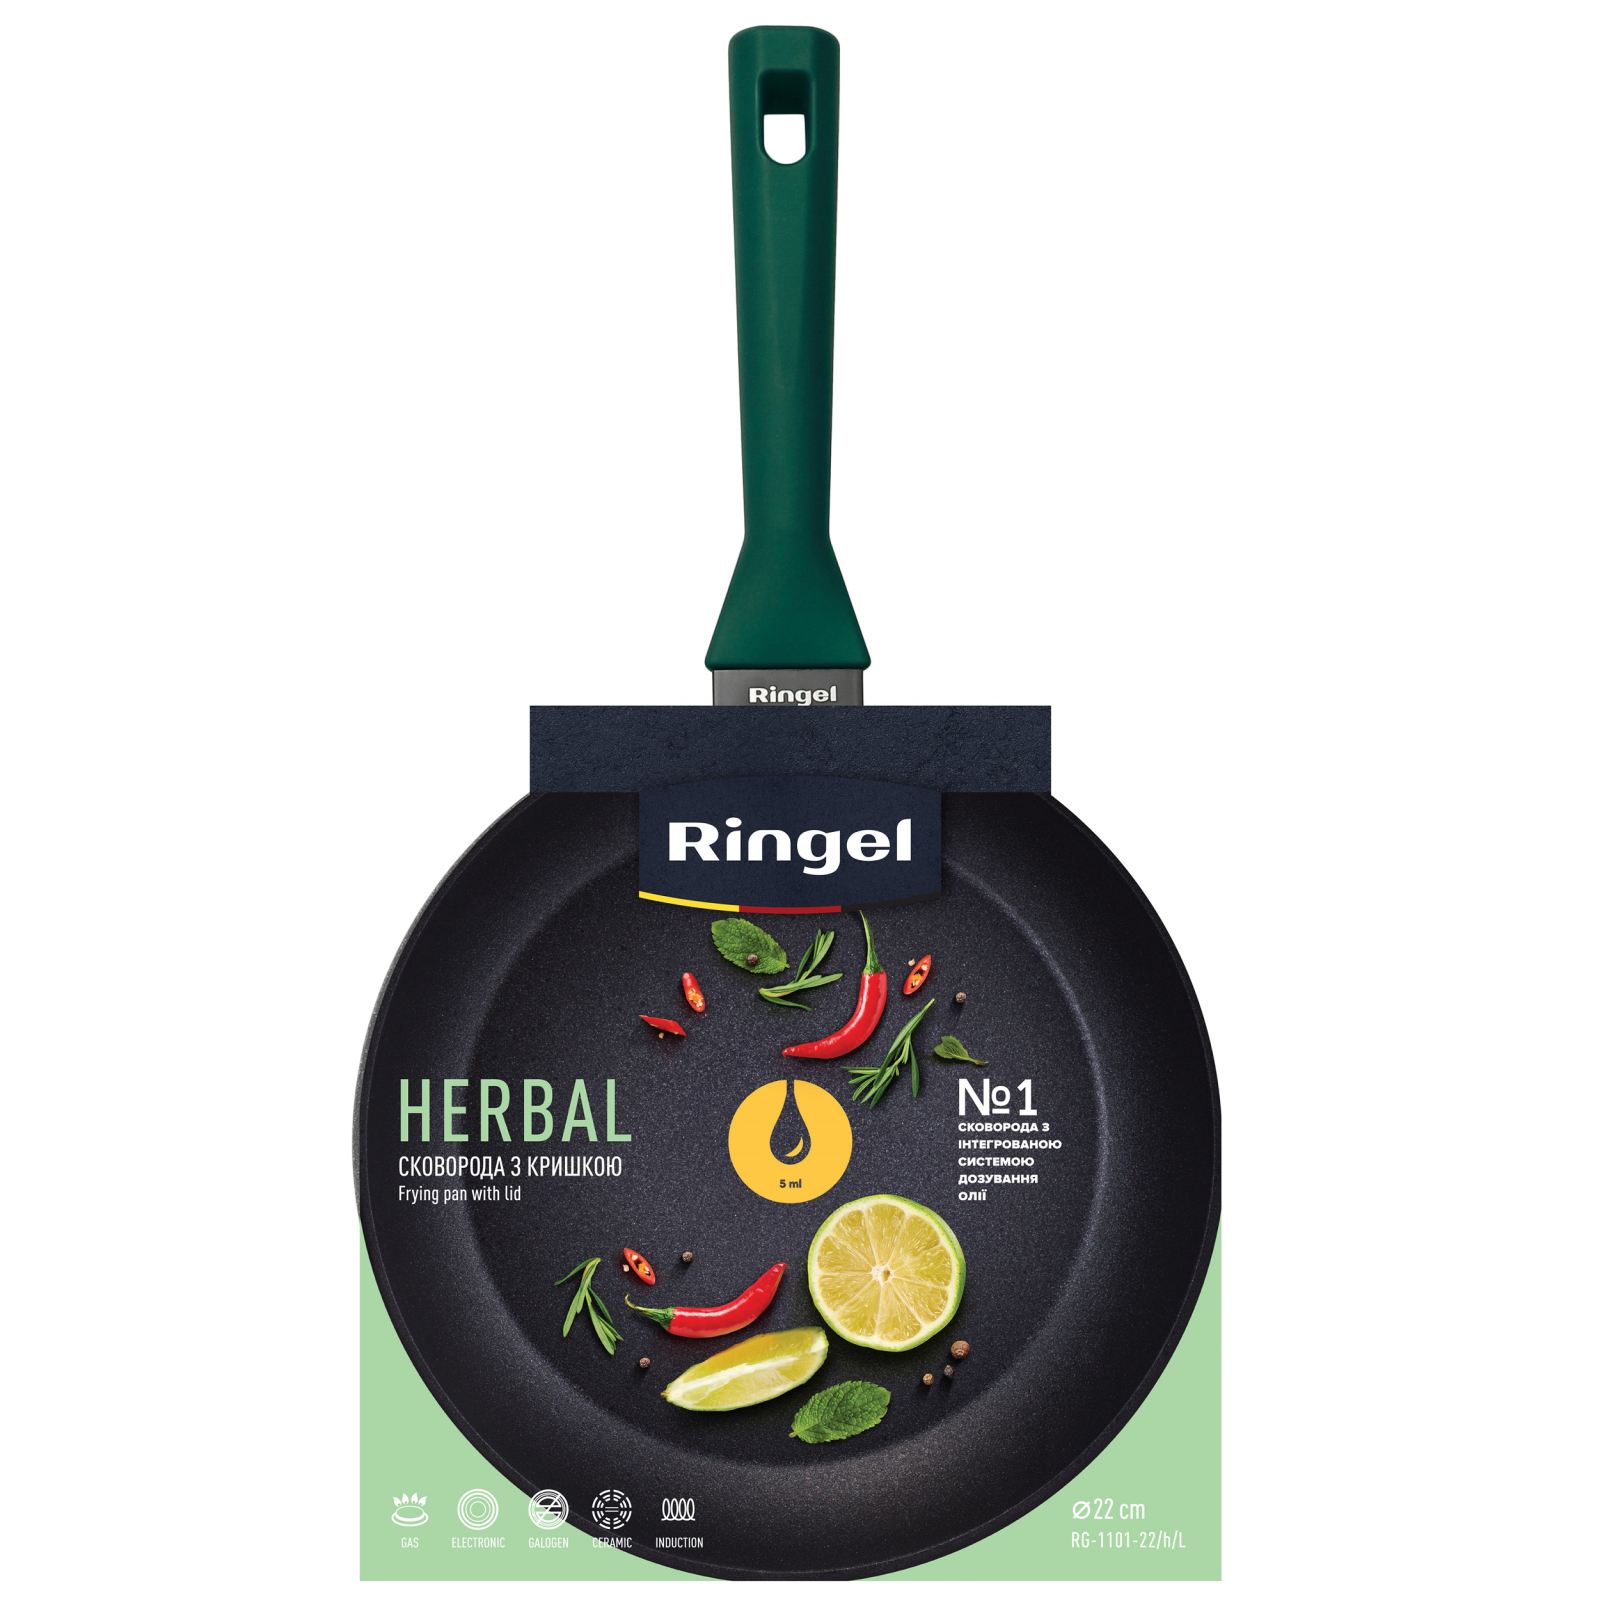 Сковорода Ringel Herbal 26 см (RG-1101-26/h/L) изображение 5